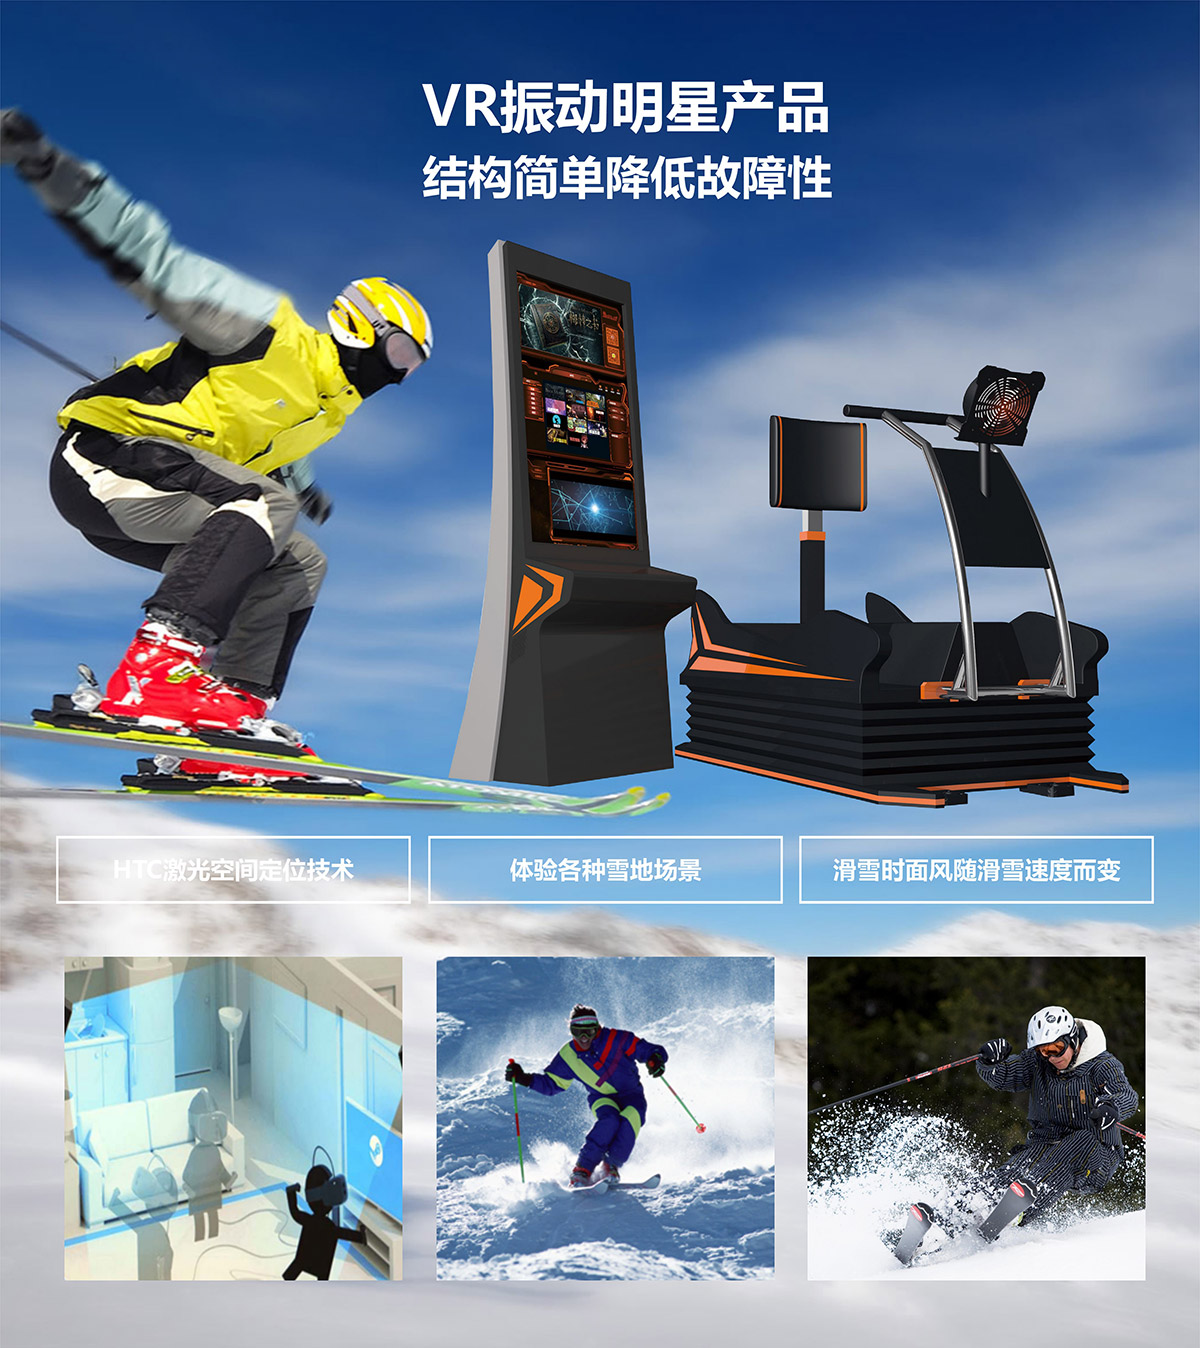 特效电影VR明星产品模拟滑雪.jpg